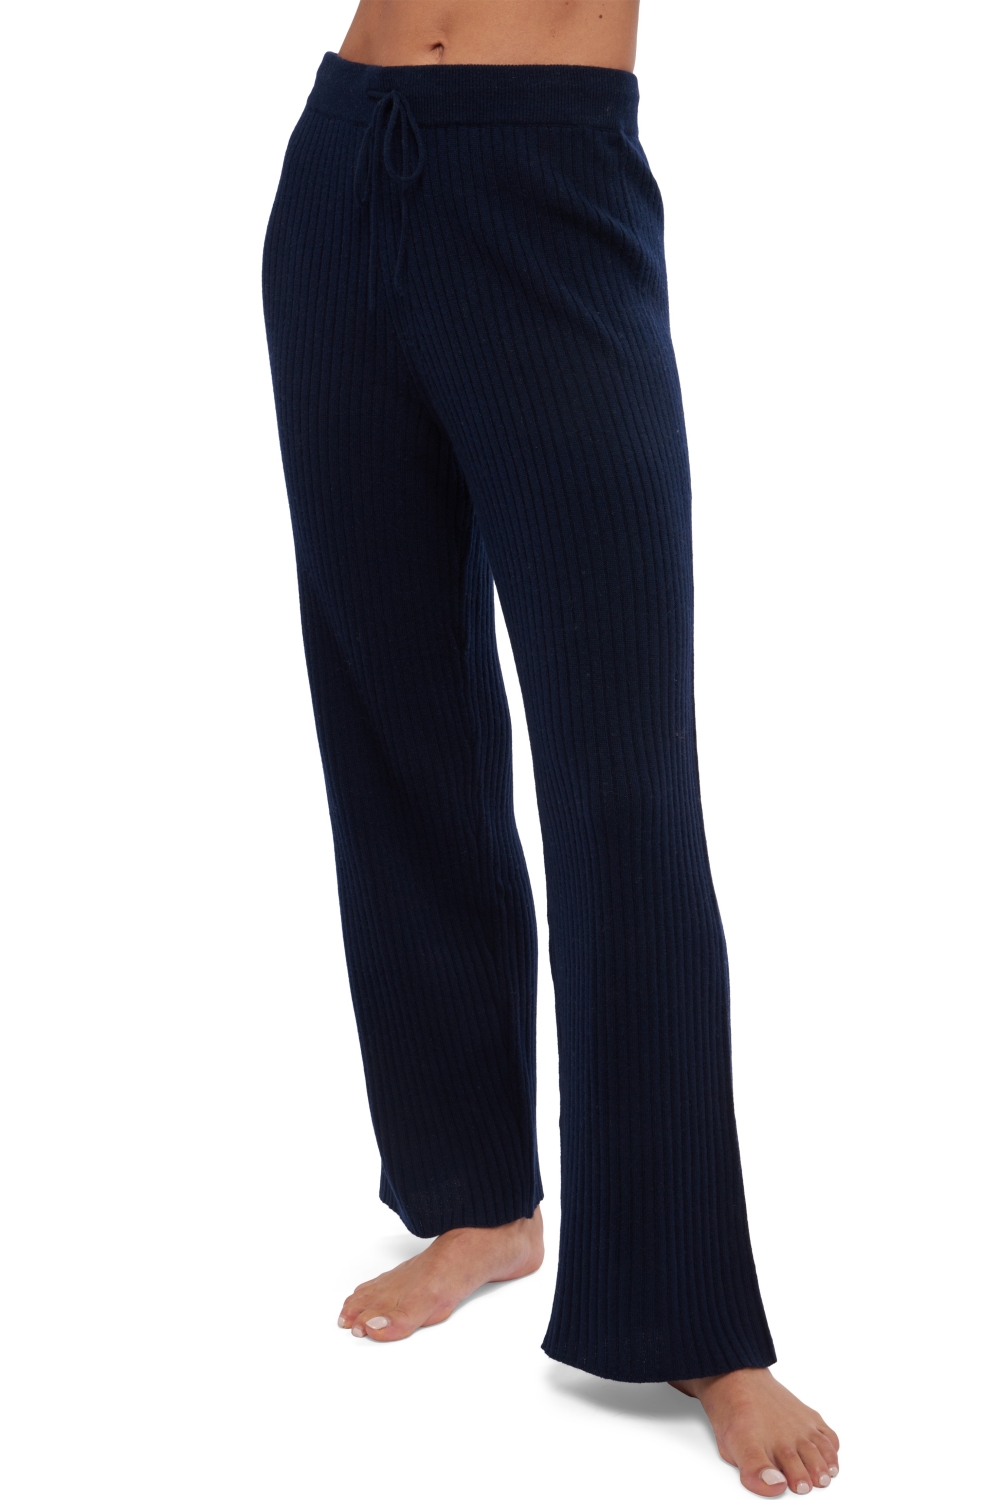 Cashmere ladies trousers leggings avignon dress blue 2xl